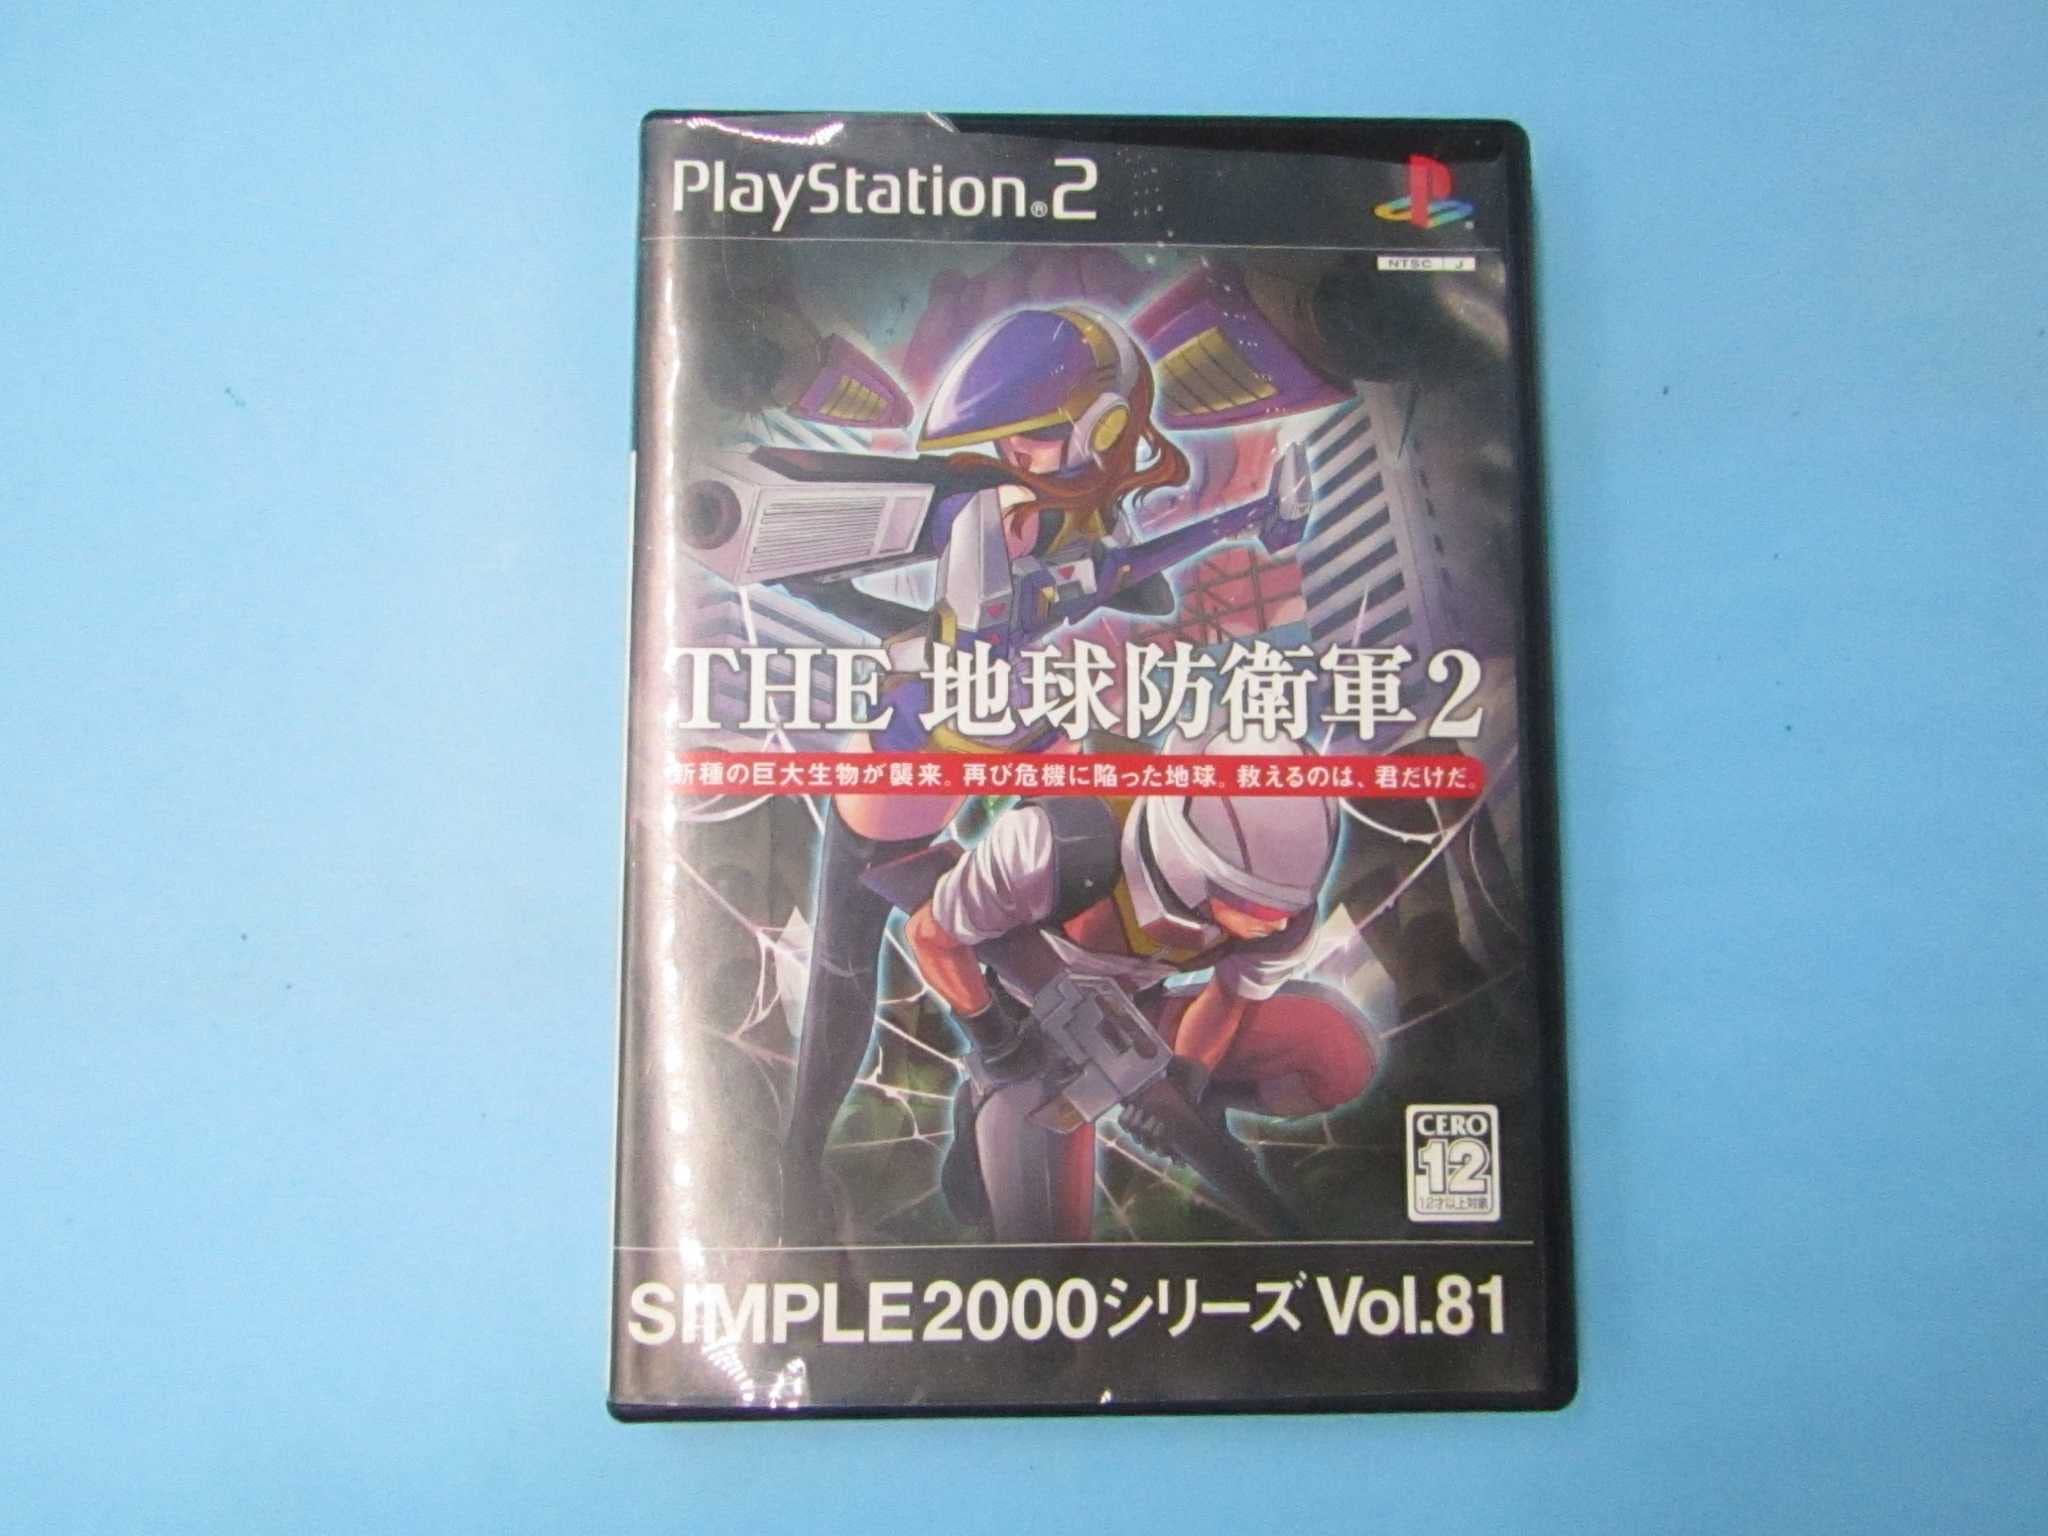 【中古】SIMPLE2000シリーズ Vol.81 THE 地球防衛軍2 video game PS2